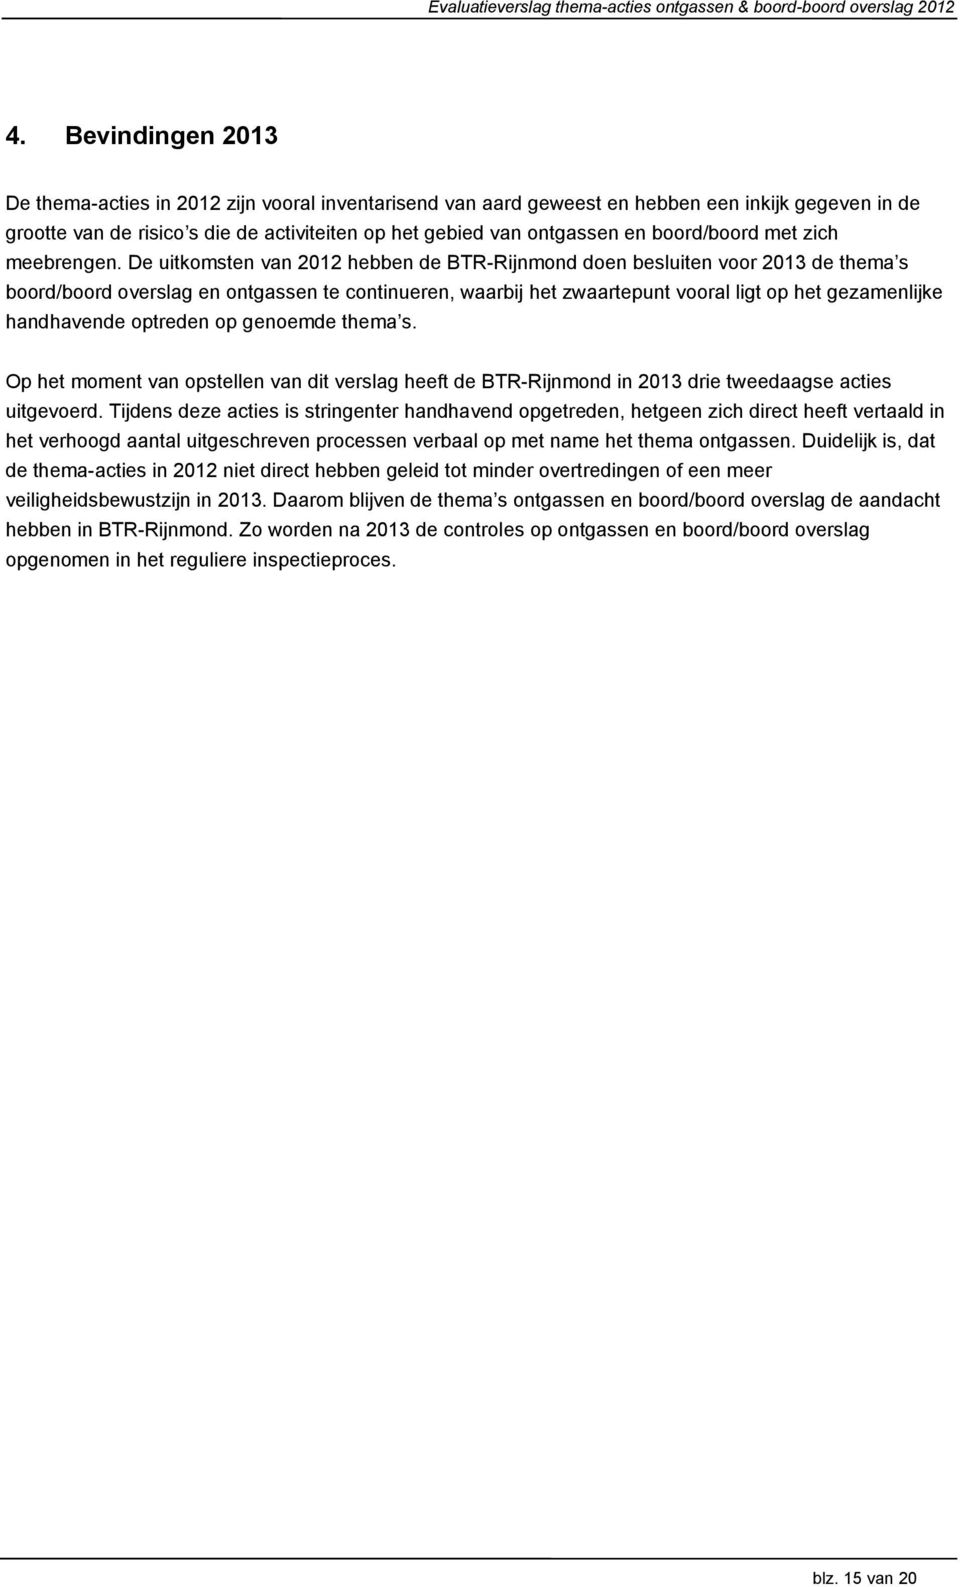 De uitkomsten van 2012 hebben de BTR-Rijnmond doen besluiten voor 2013 de thema s boord/boord overslag en ontgassen te continueren, waarbij het zwaartepunt vooral ligt op het gezamenlijke handhavende